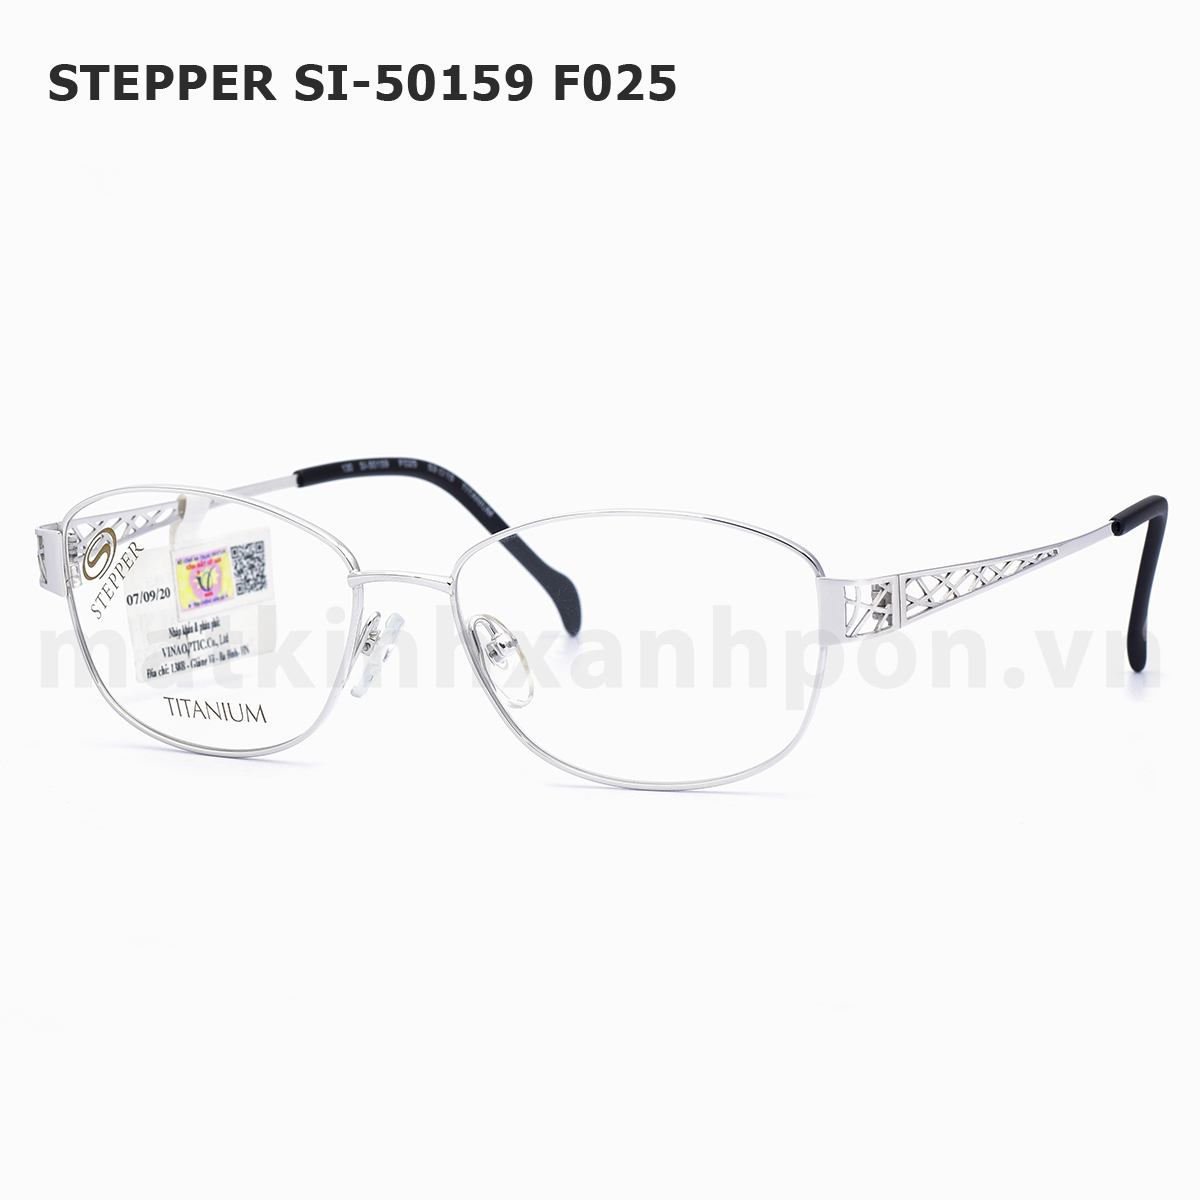 Stepper SI-50159 F025